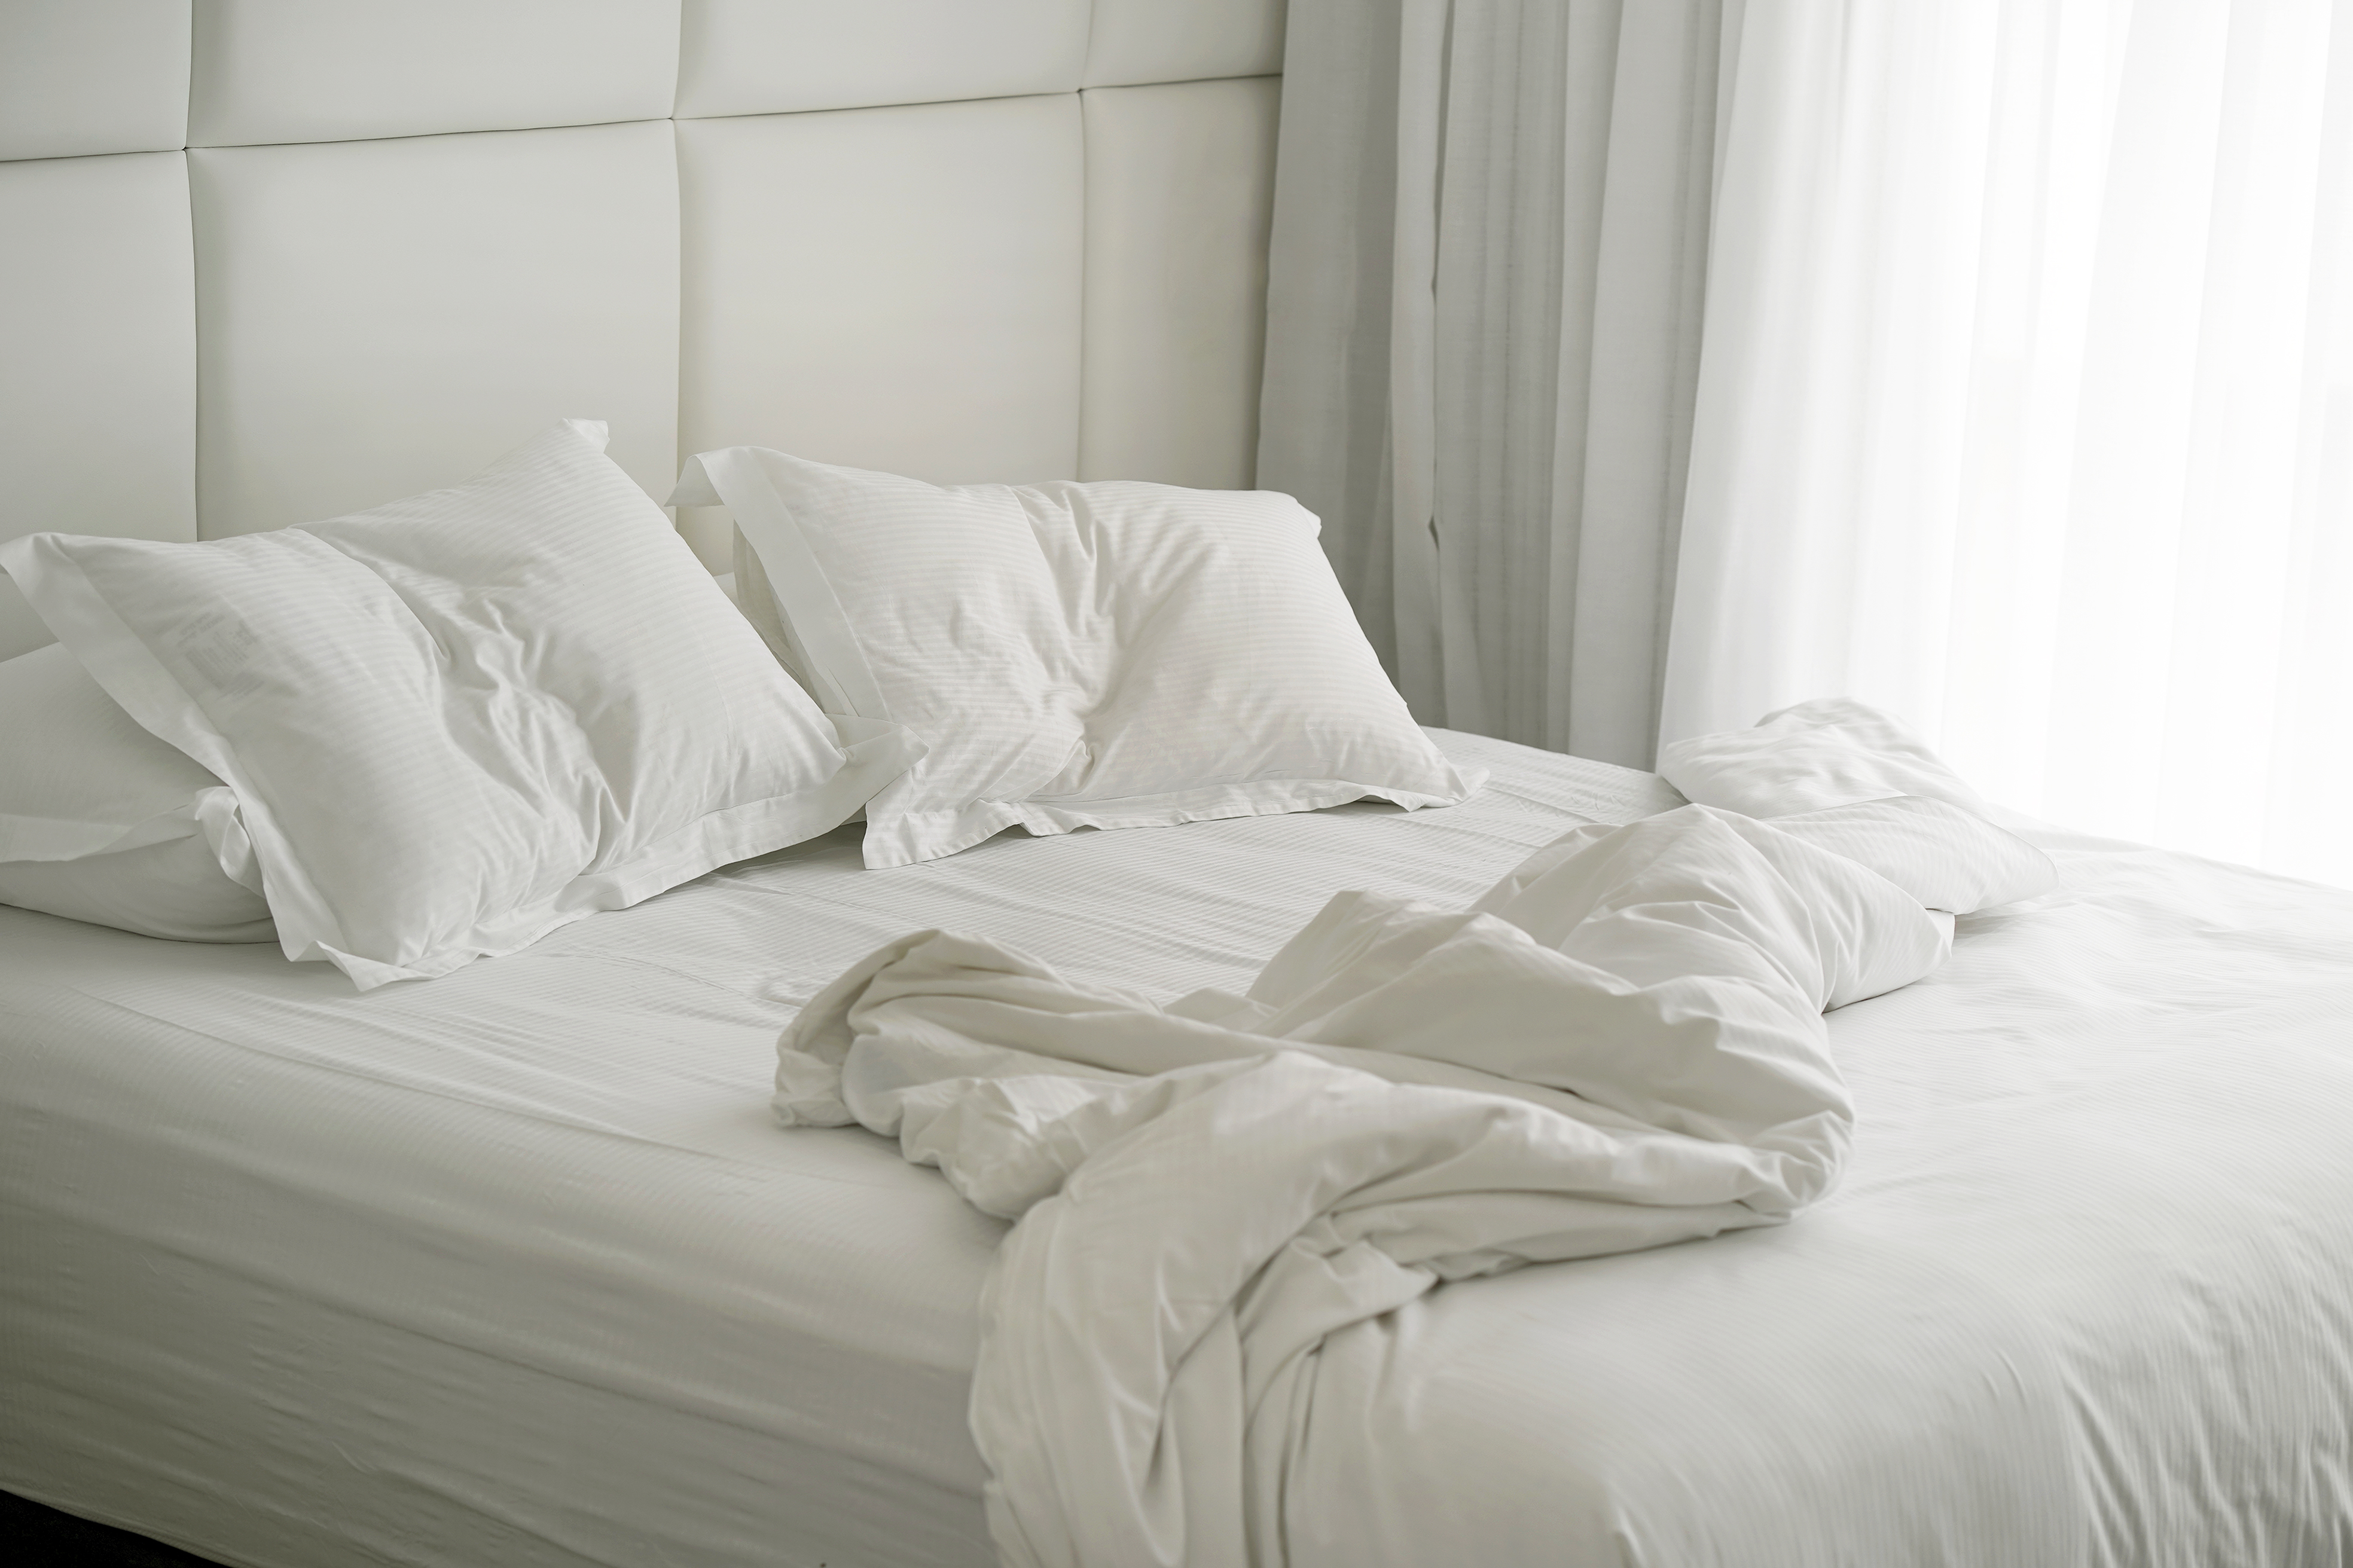 La cama desarreglada | Fuente: Shutterstock